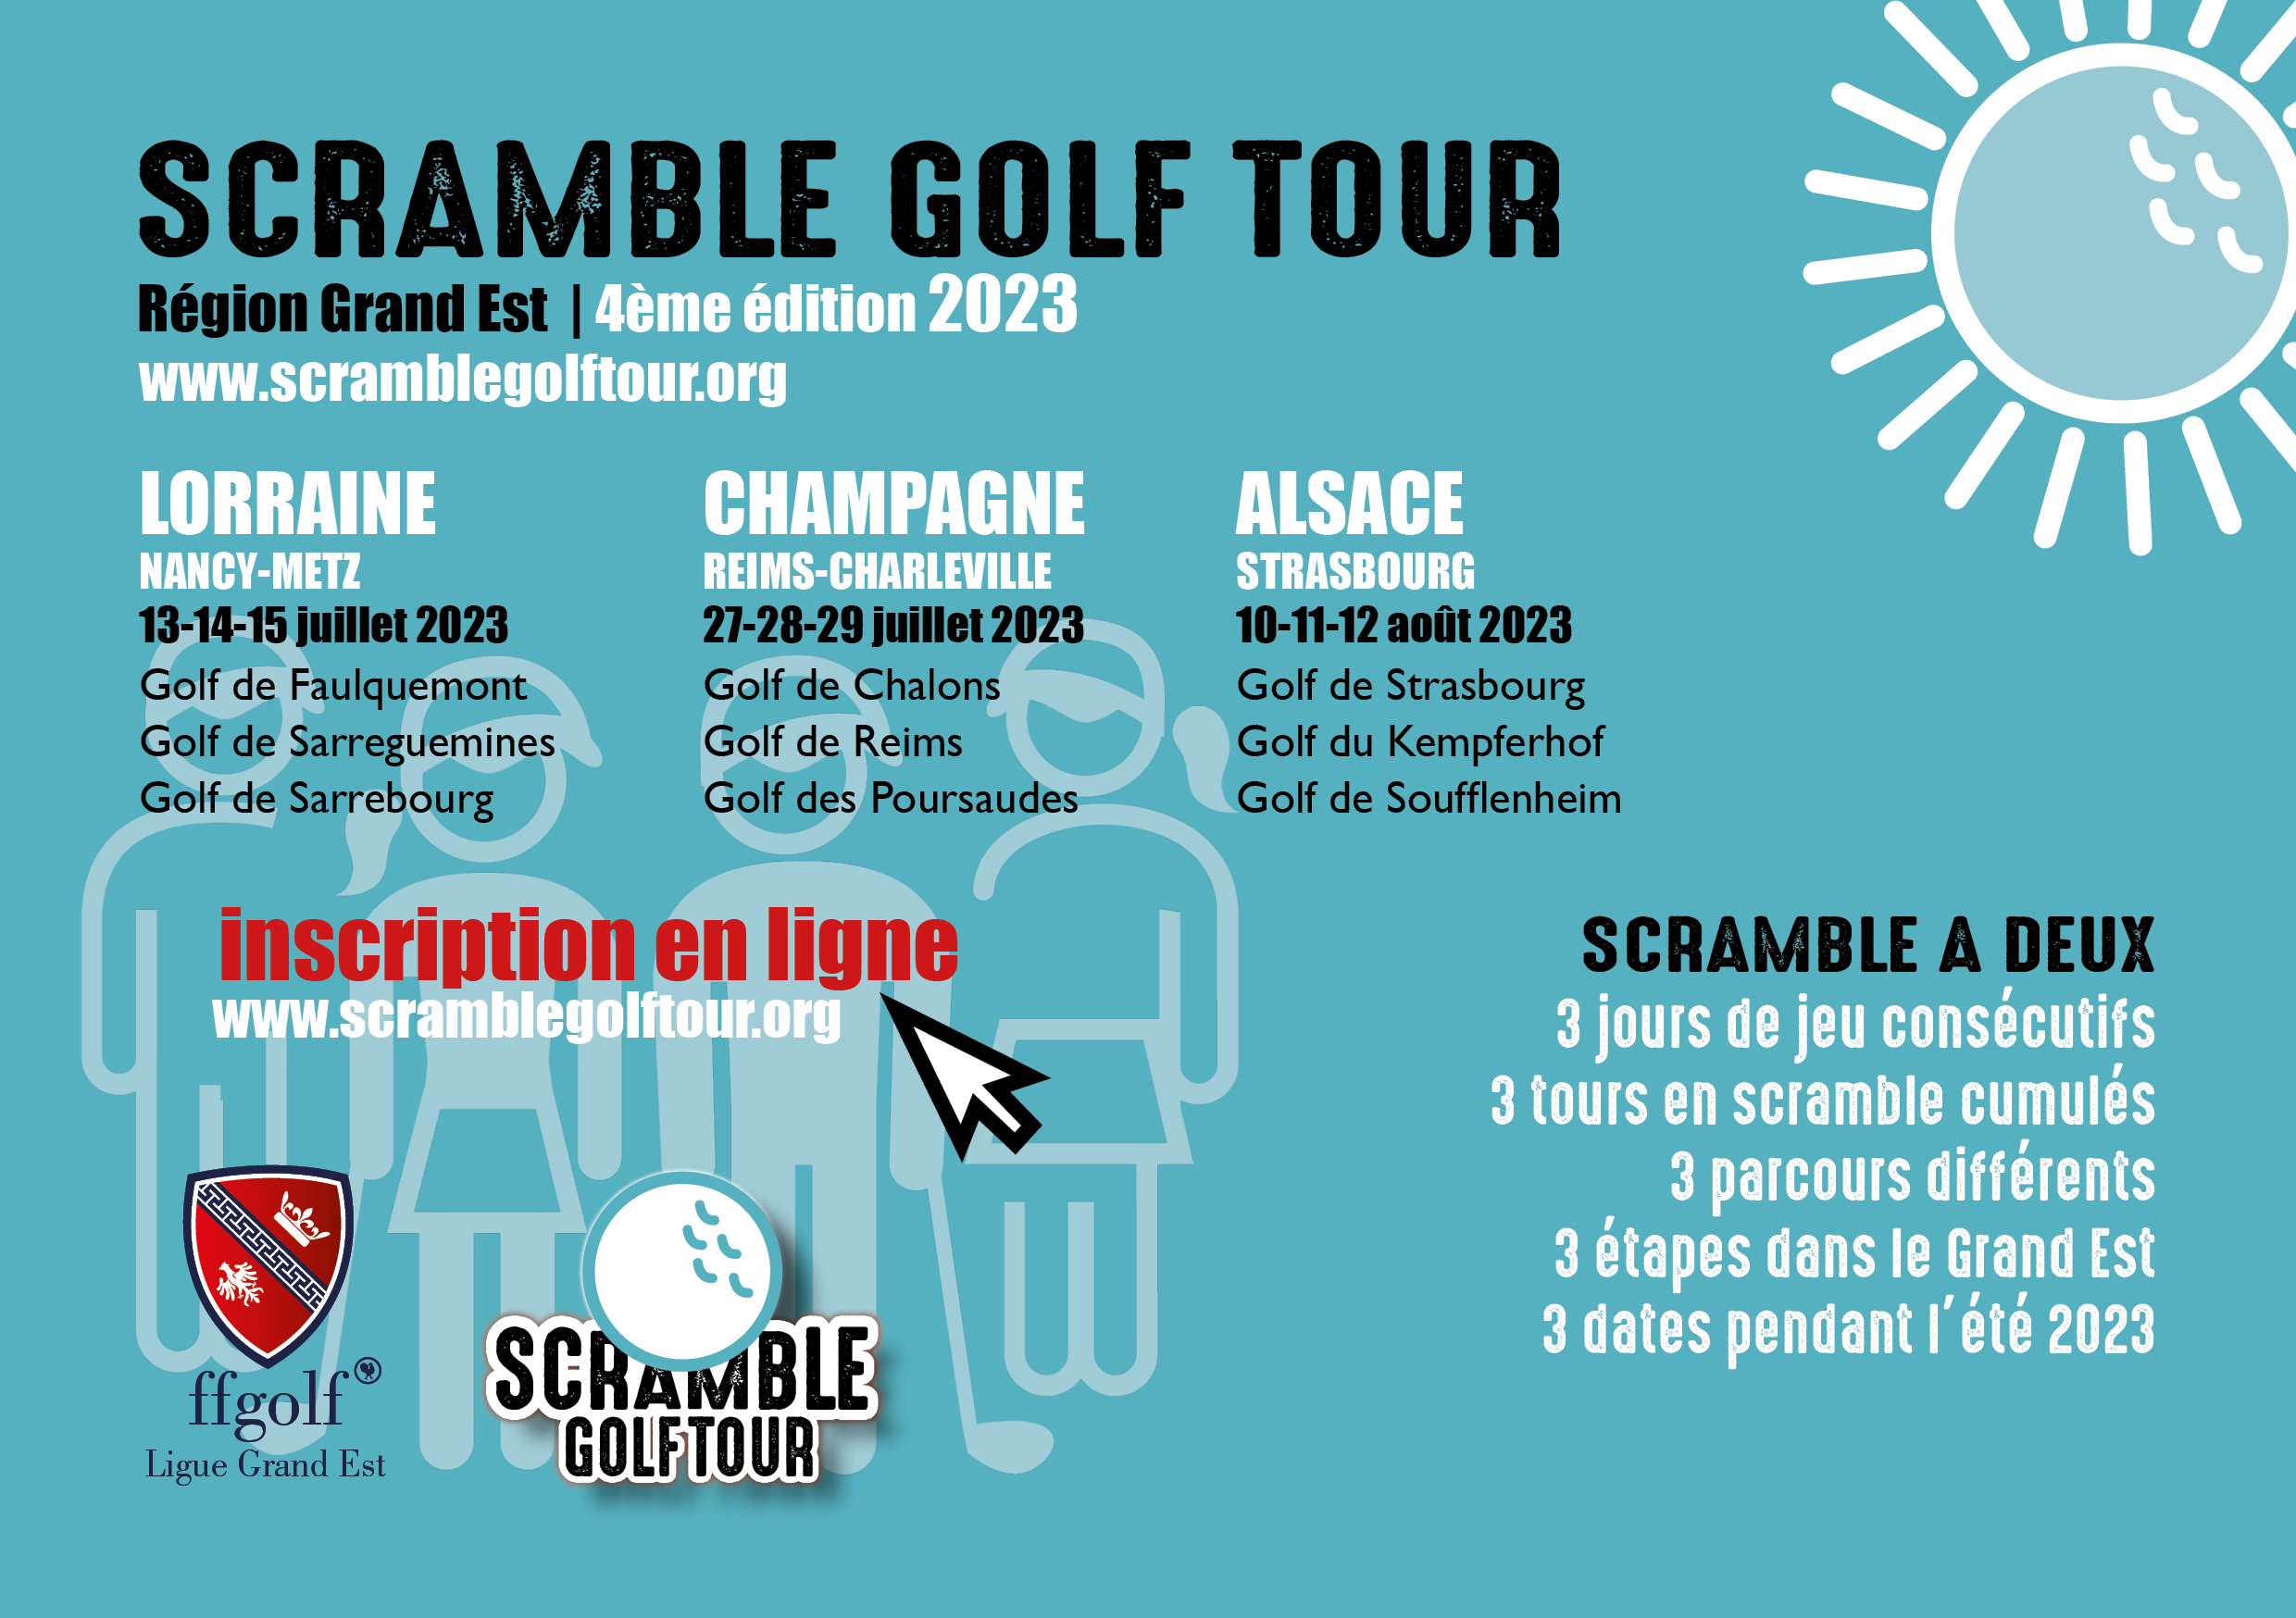 Scramble Golf Tour Golf International Soufflenheim BadenBaden